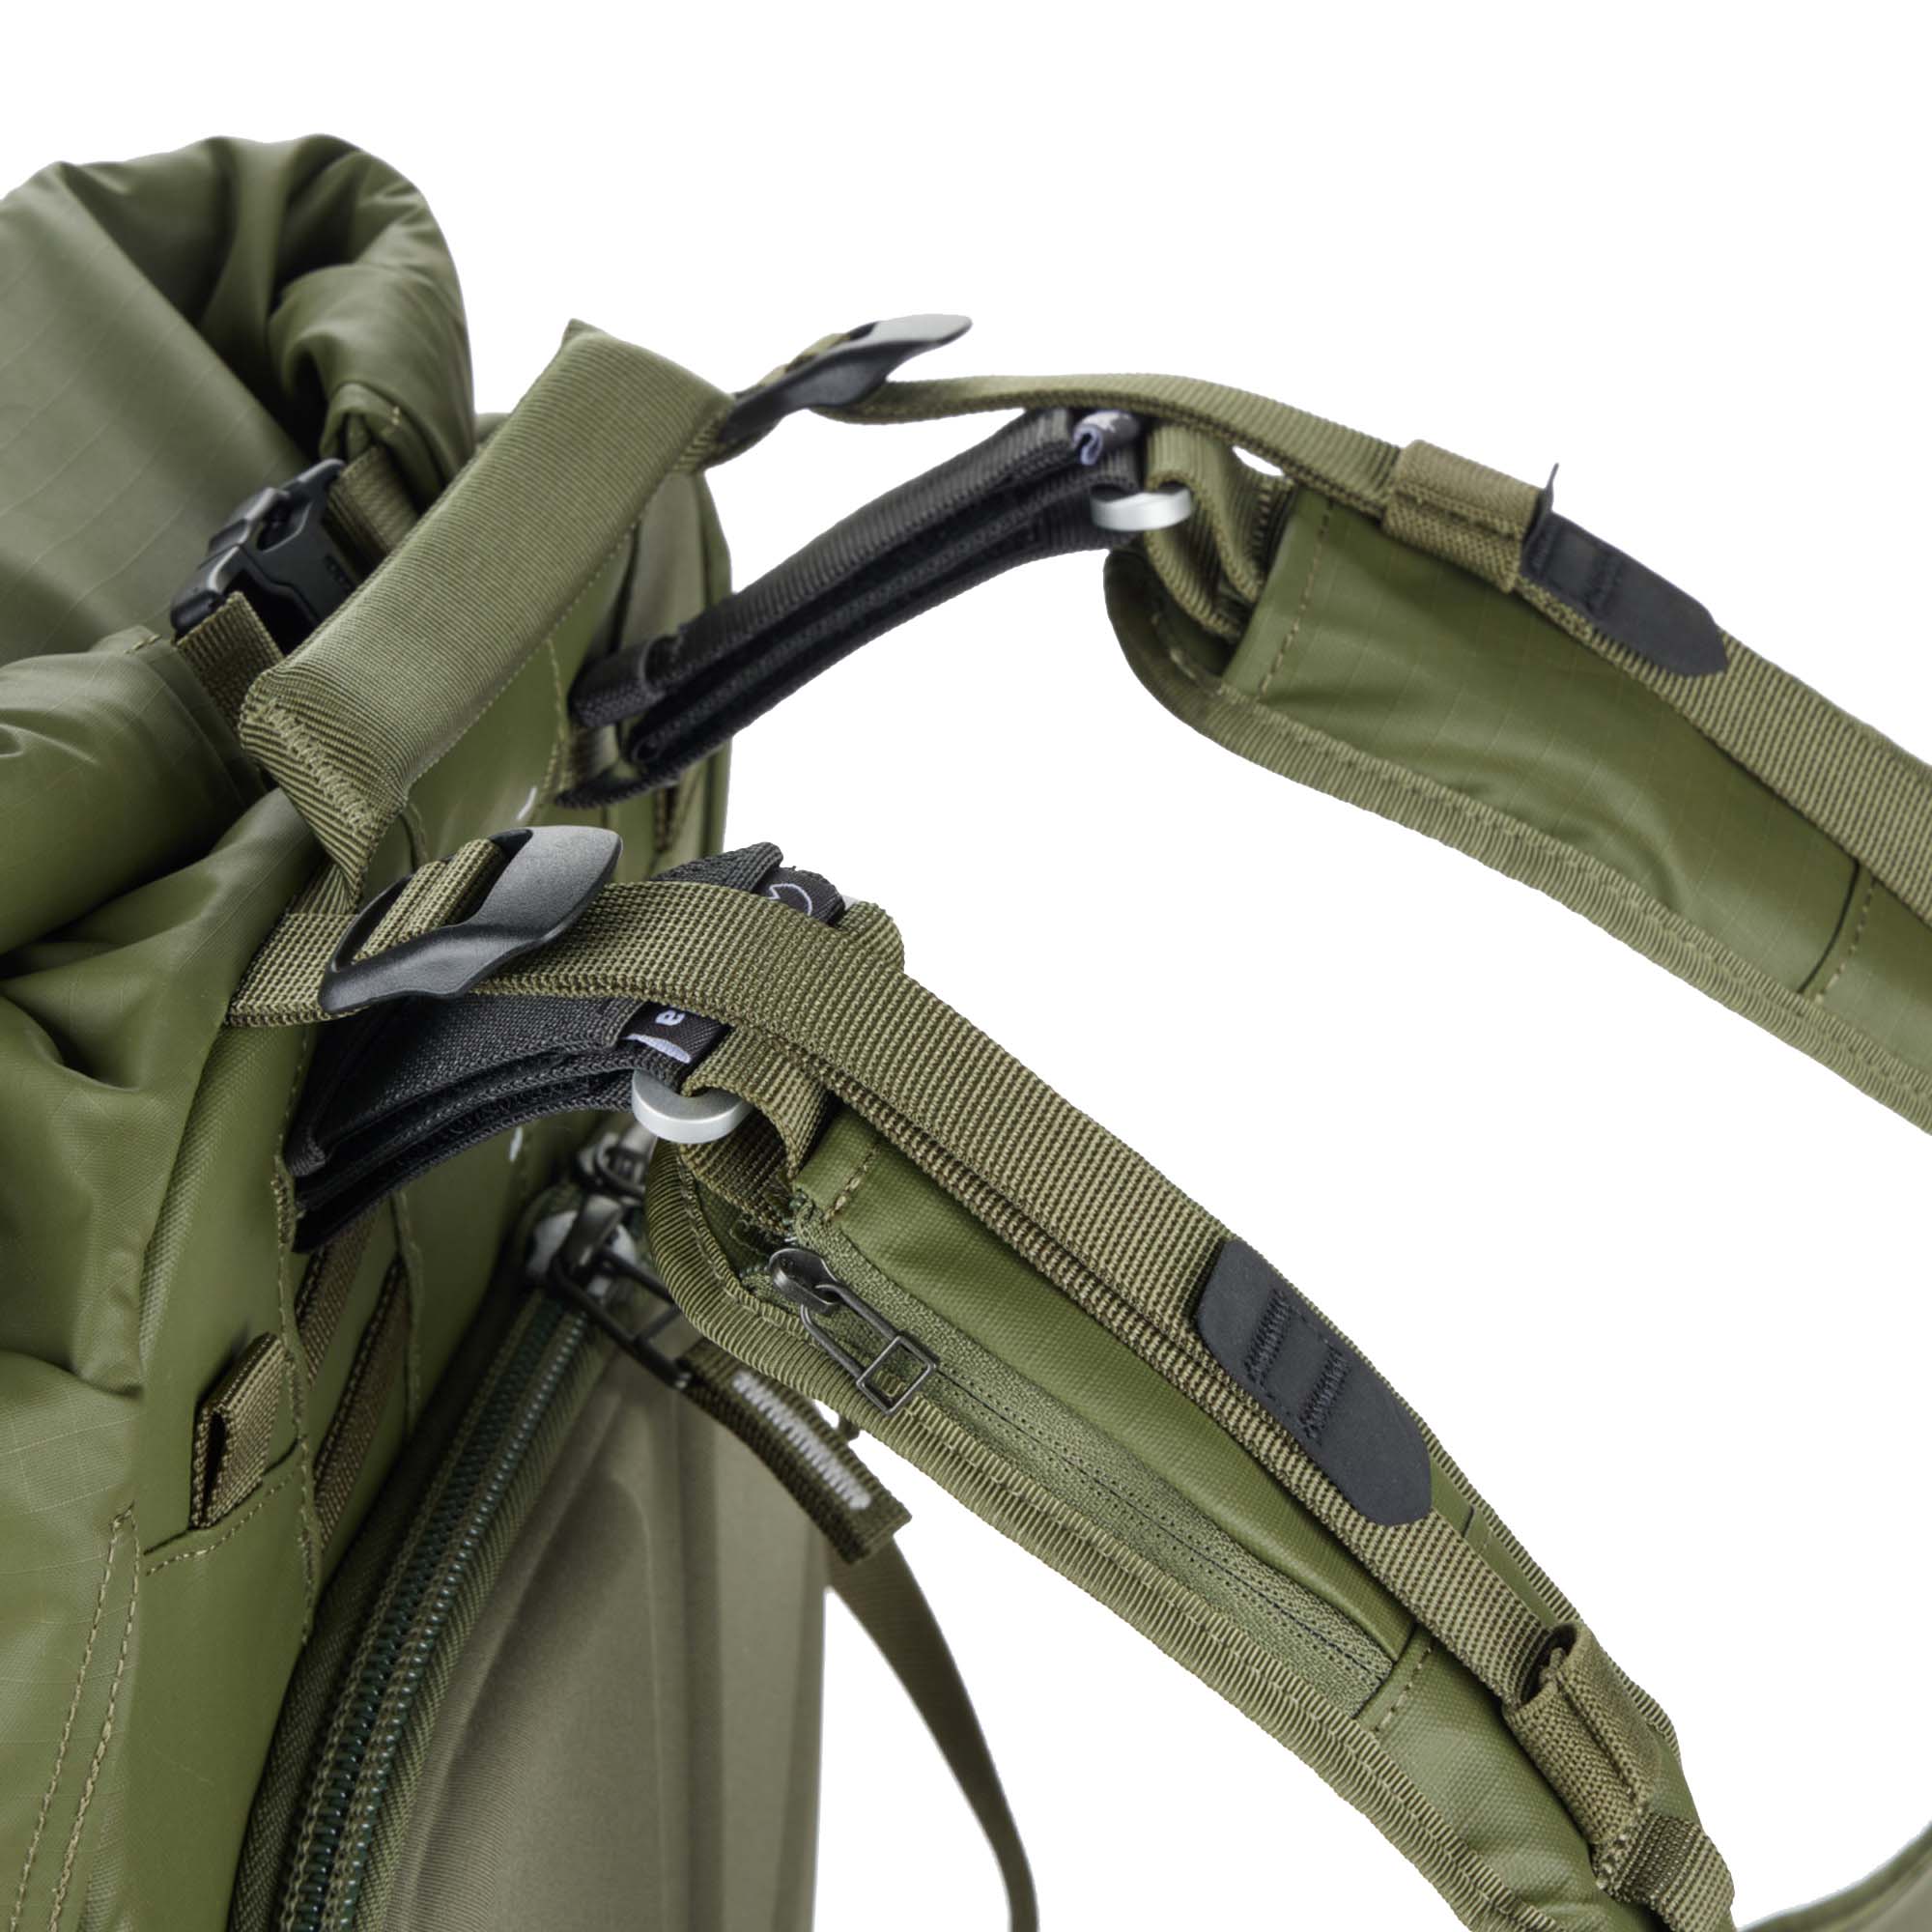 Buckle Strap Belt Bag Extended Strap Fanny Pack Shoulder Strap Extension